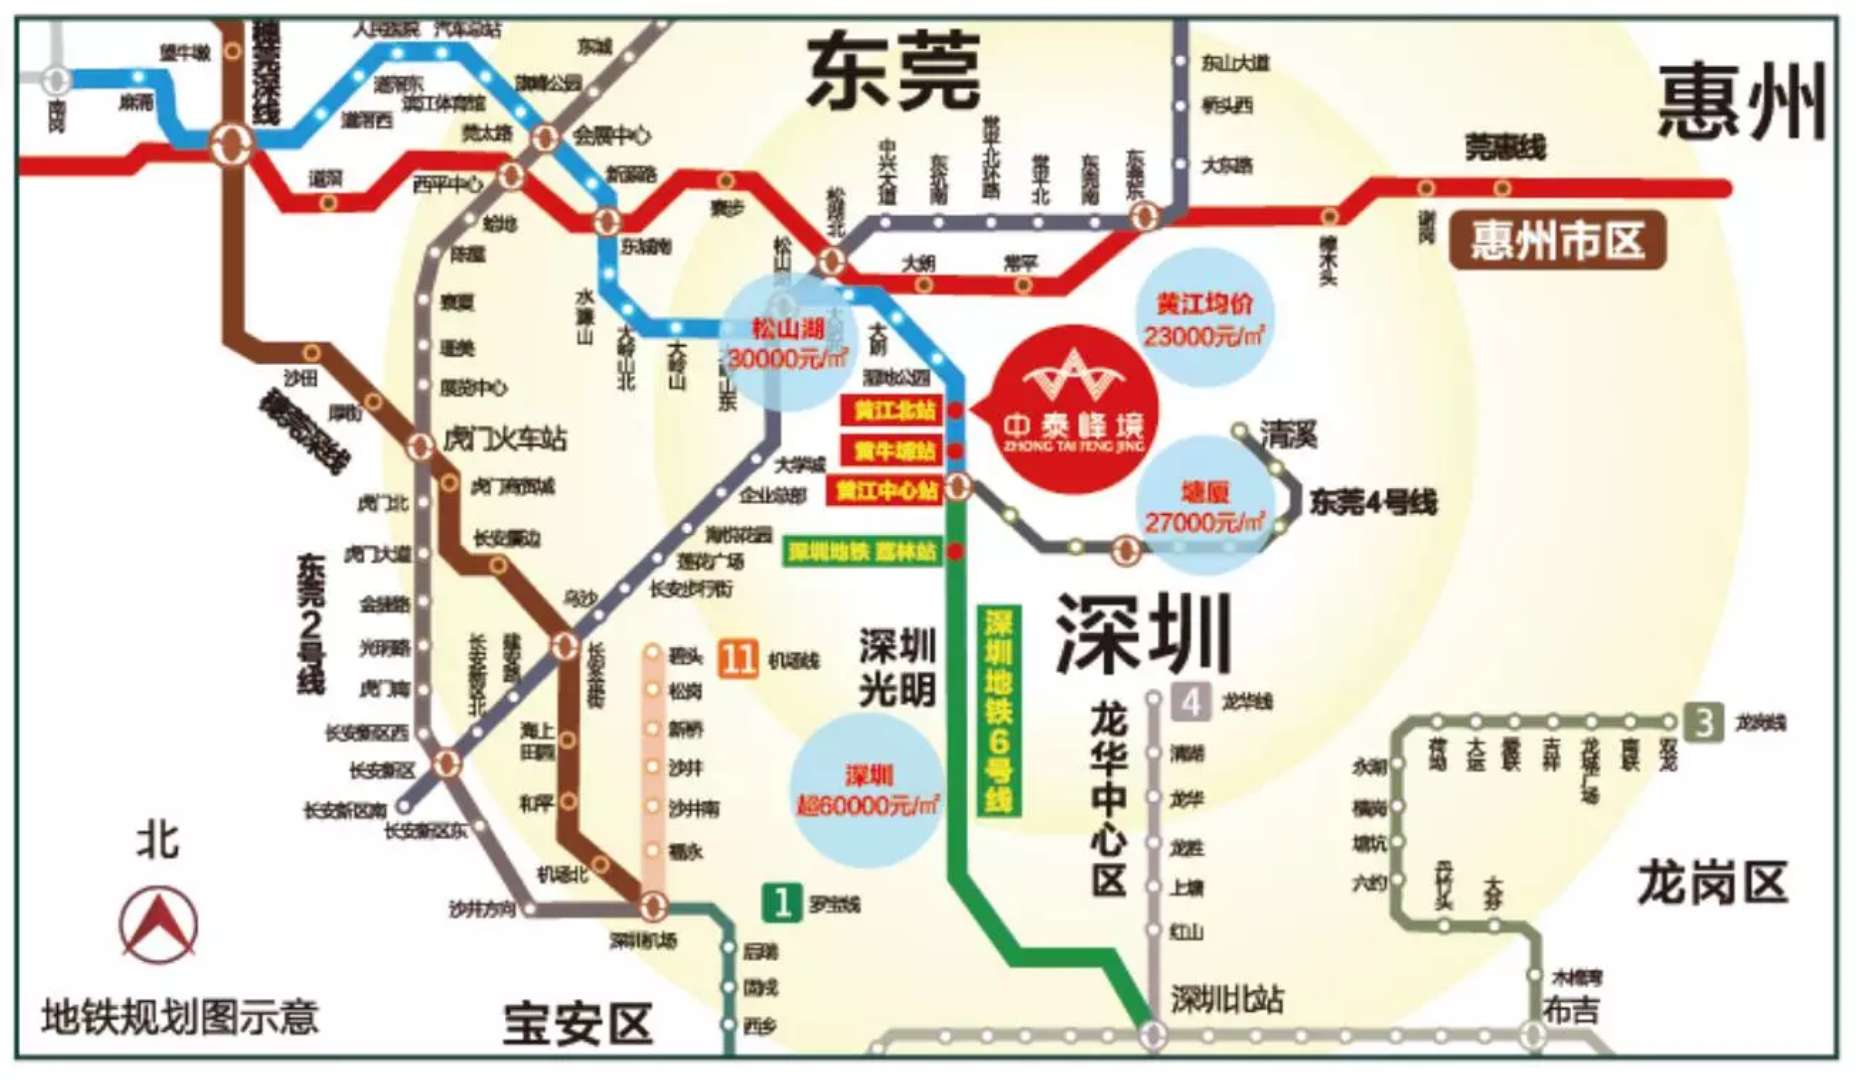 中泰峰境项目邻近东莞地铁1号线(在建)黄江北站,接驳深圳6号线(在建)